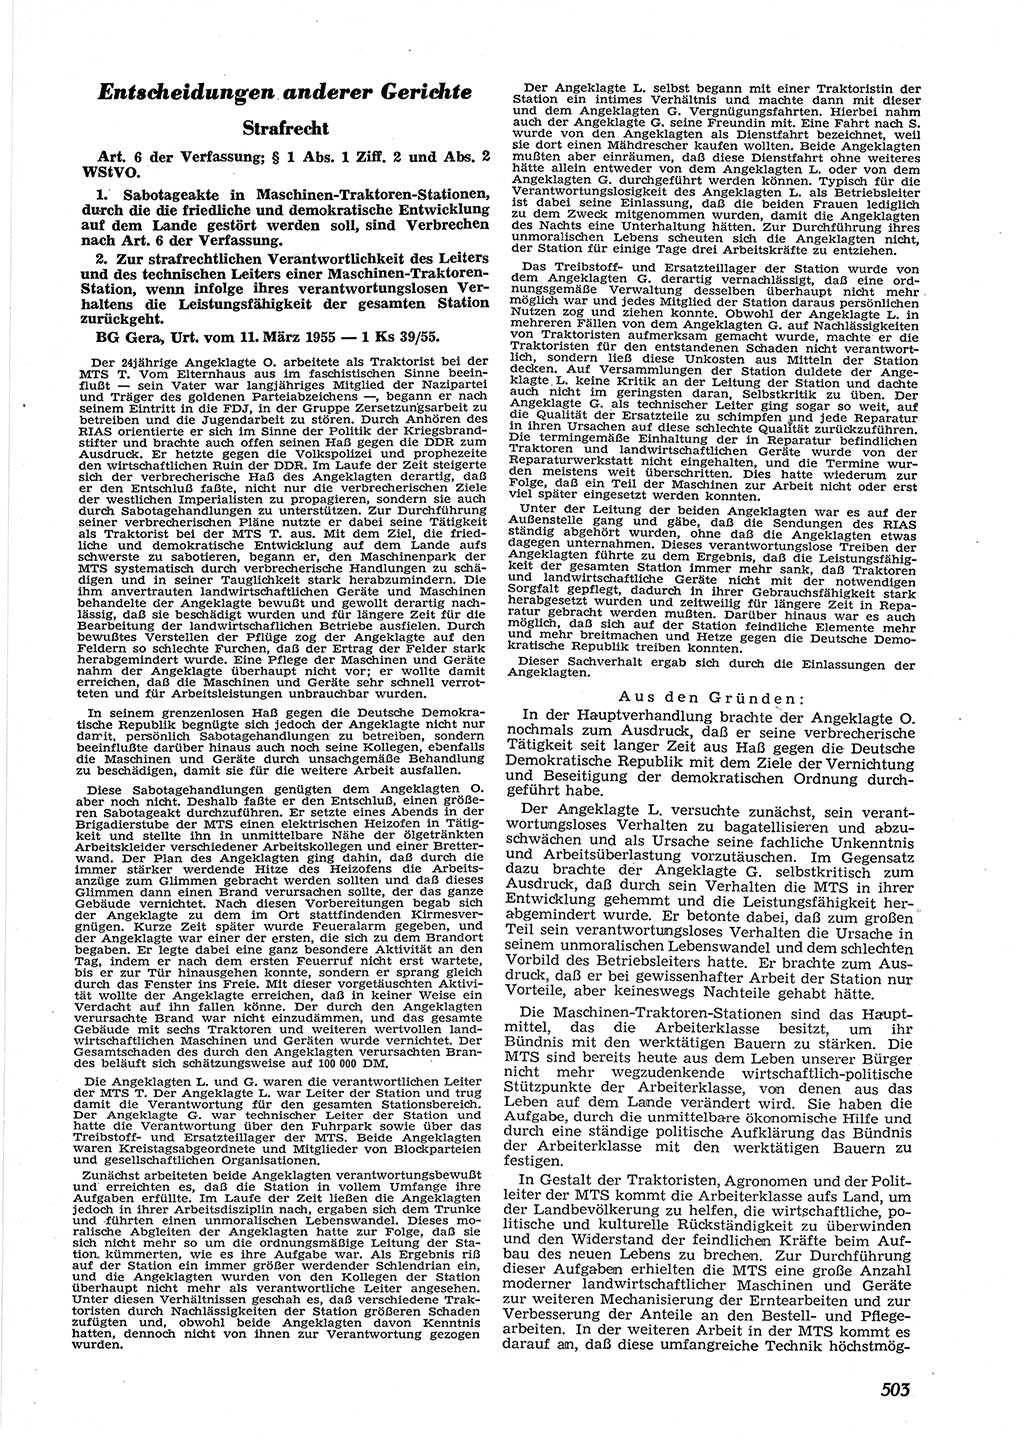 Neue Justiz (NJ), Zeitschrift für Recht und Rechtswissenschaft [Deutsche Demokratische Republik (DDR)], 9. Jahrgang 1955, Seite 503 (NJ DDR 1955, S. 503)